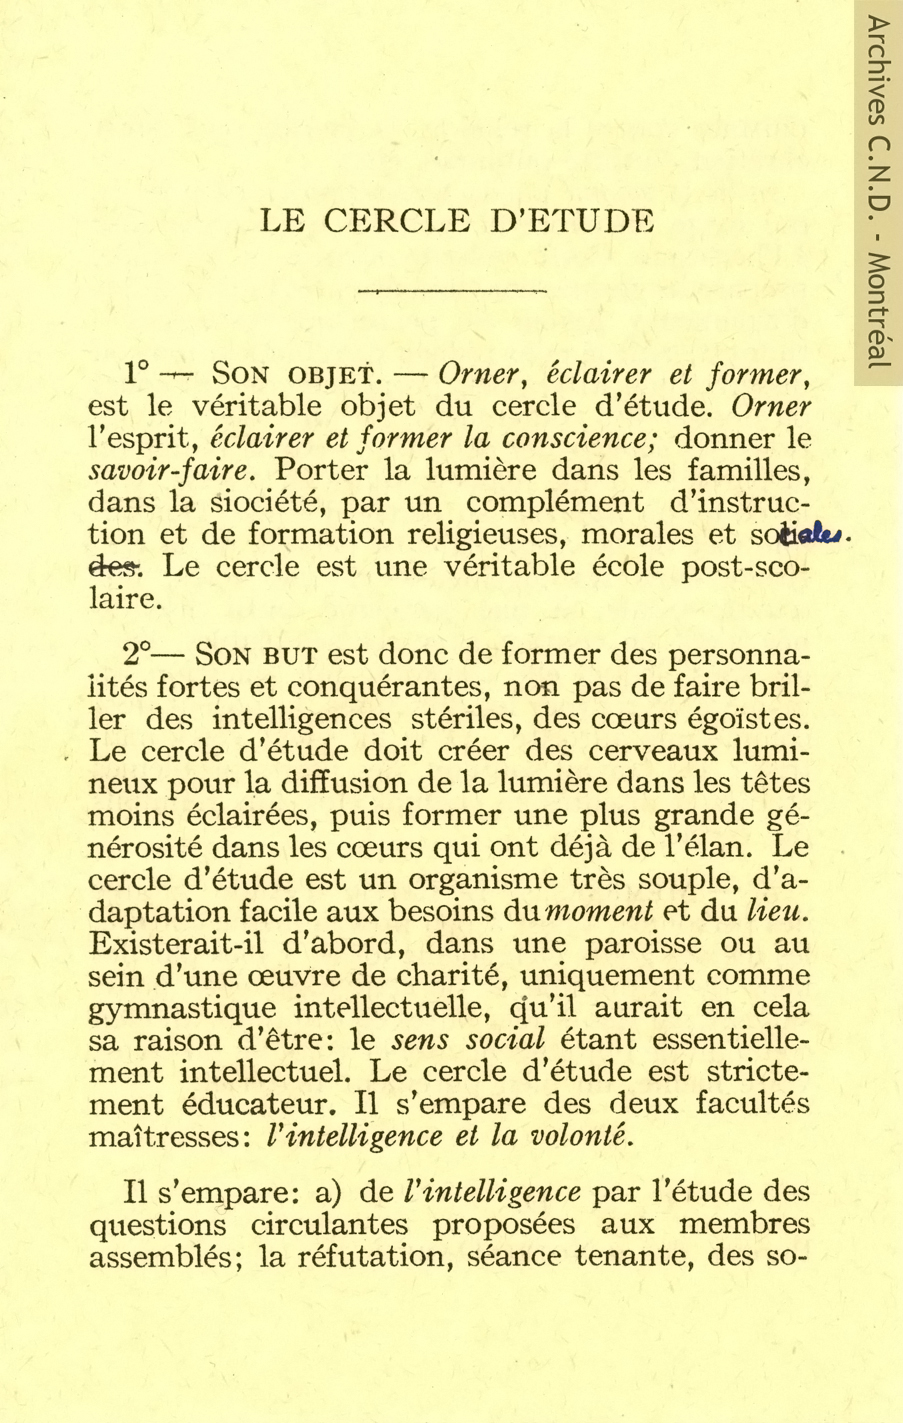 Página sacada de los reglamentos de los círculos de estudios de la Congrégation-de-Notre-Dame